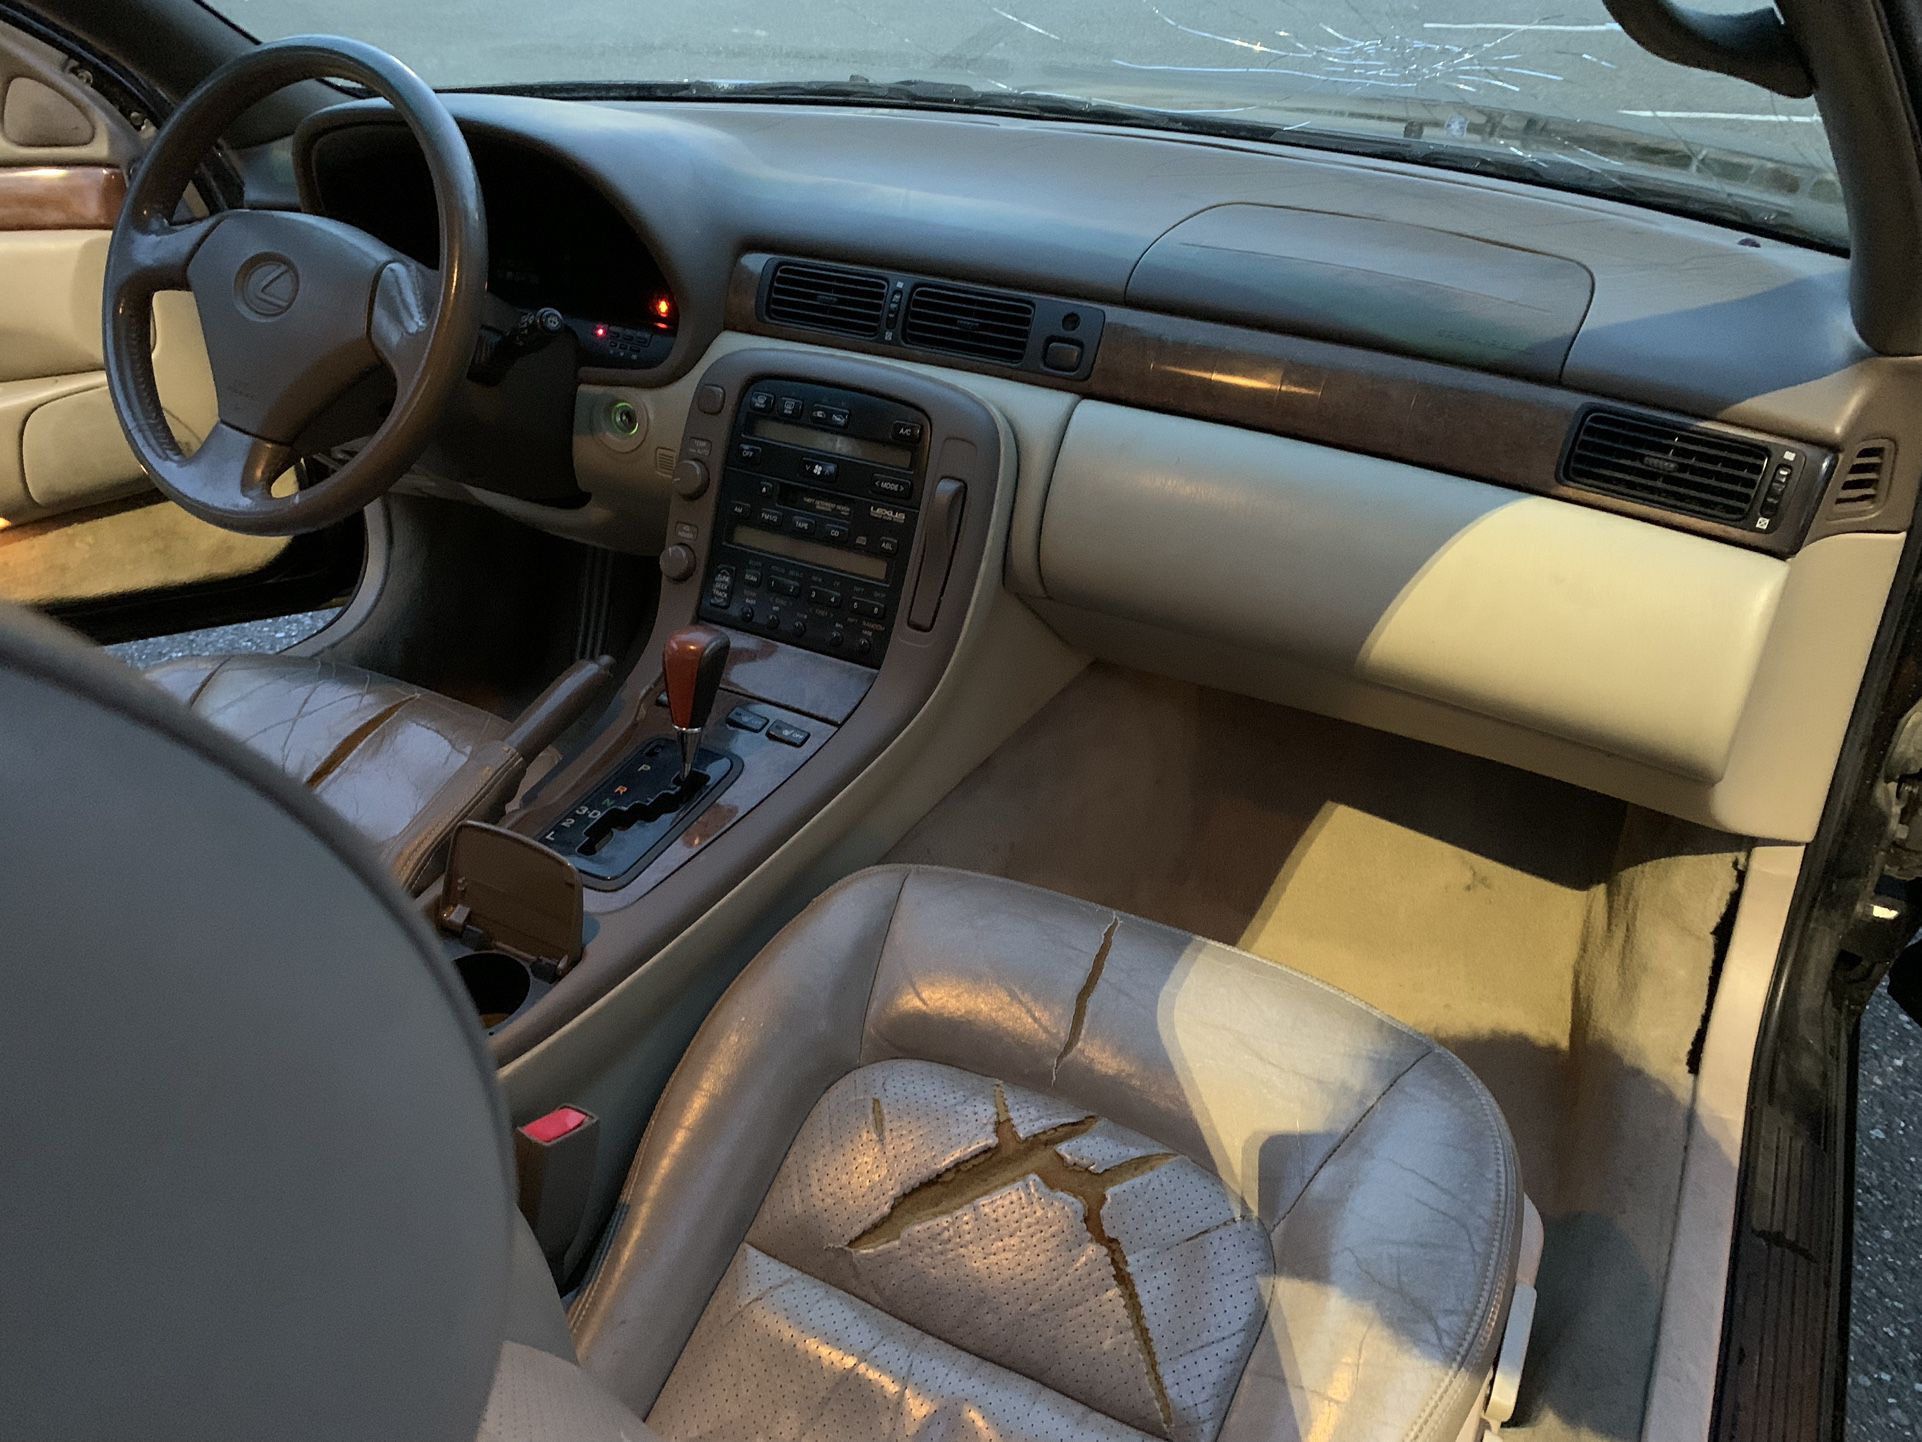 Full Lexus Sc300/400 Interior Part-Out 